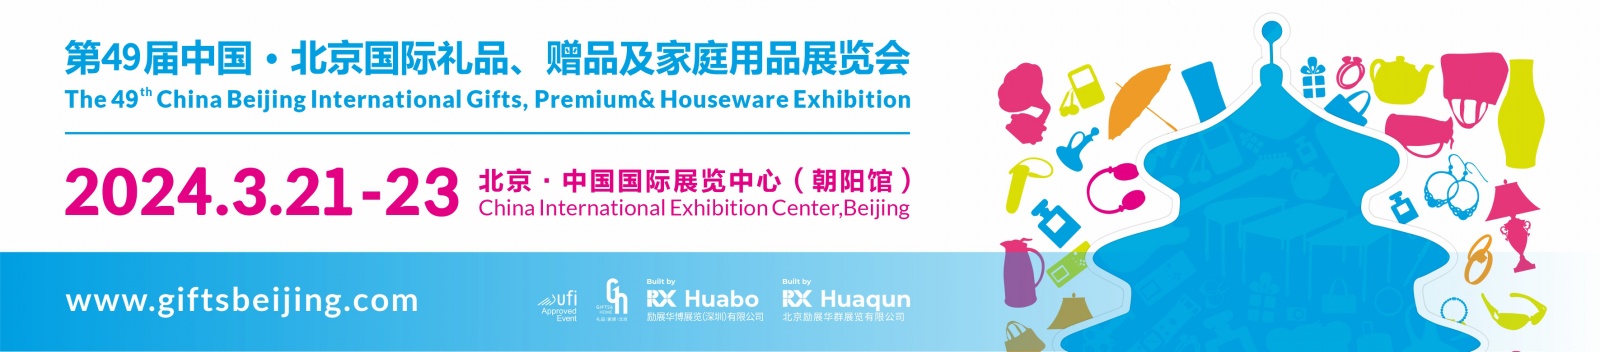 第49届中国北京国际礼品、赠品及家庭用品展览会